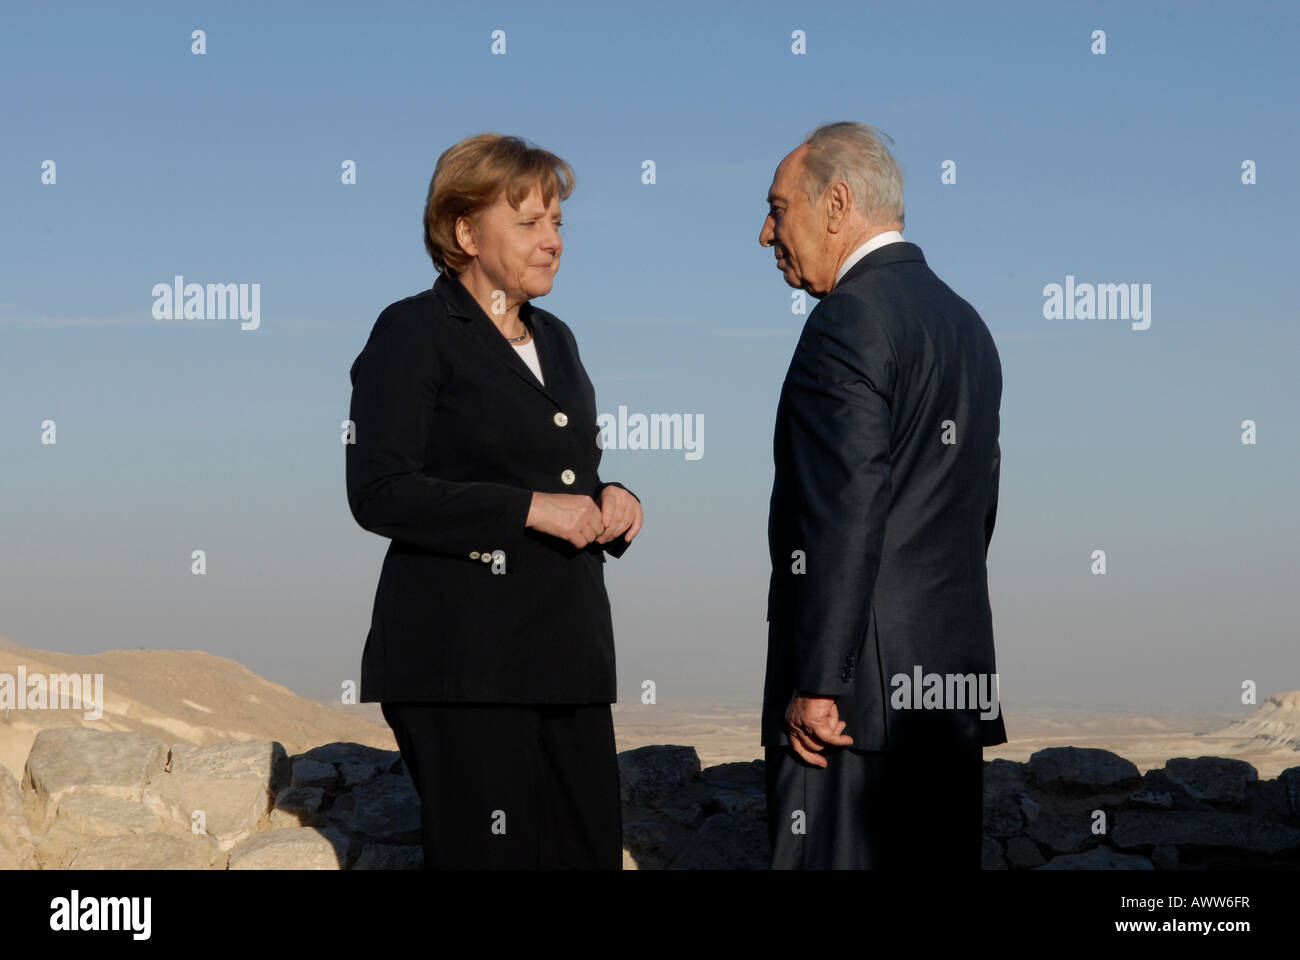 Il cancelliere tedesco Angela Merkel con il presidente israeliano Shimon Peres nel deserto del Negev, Israele Foto Stock